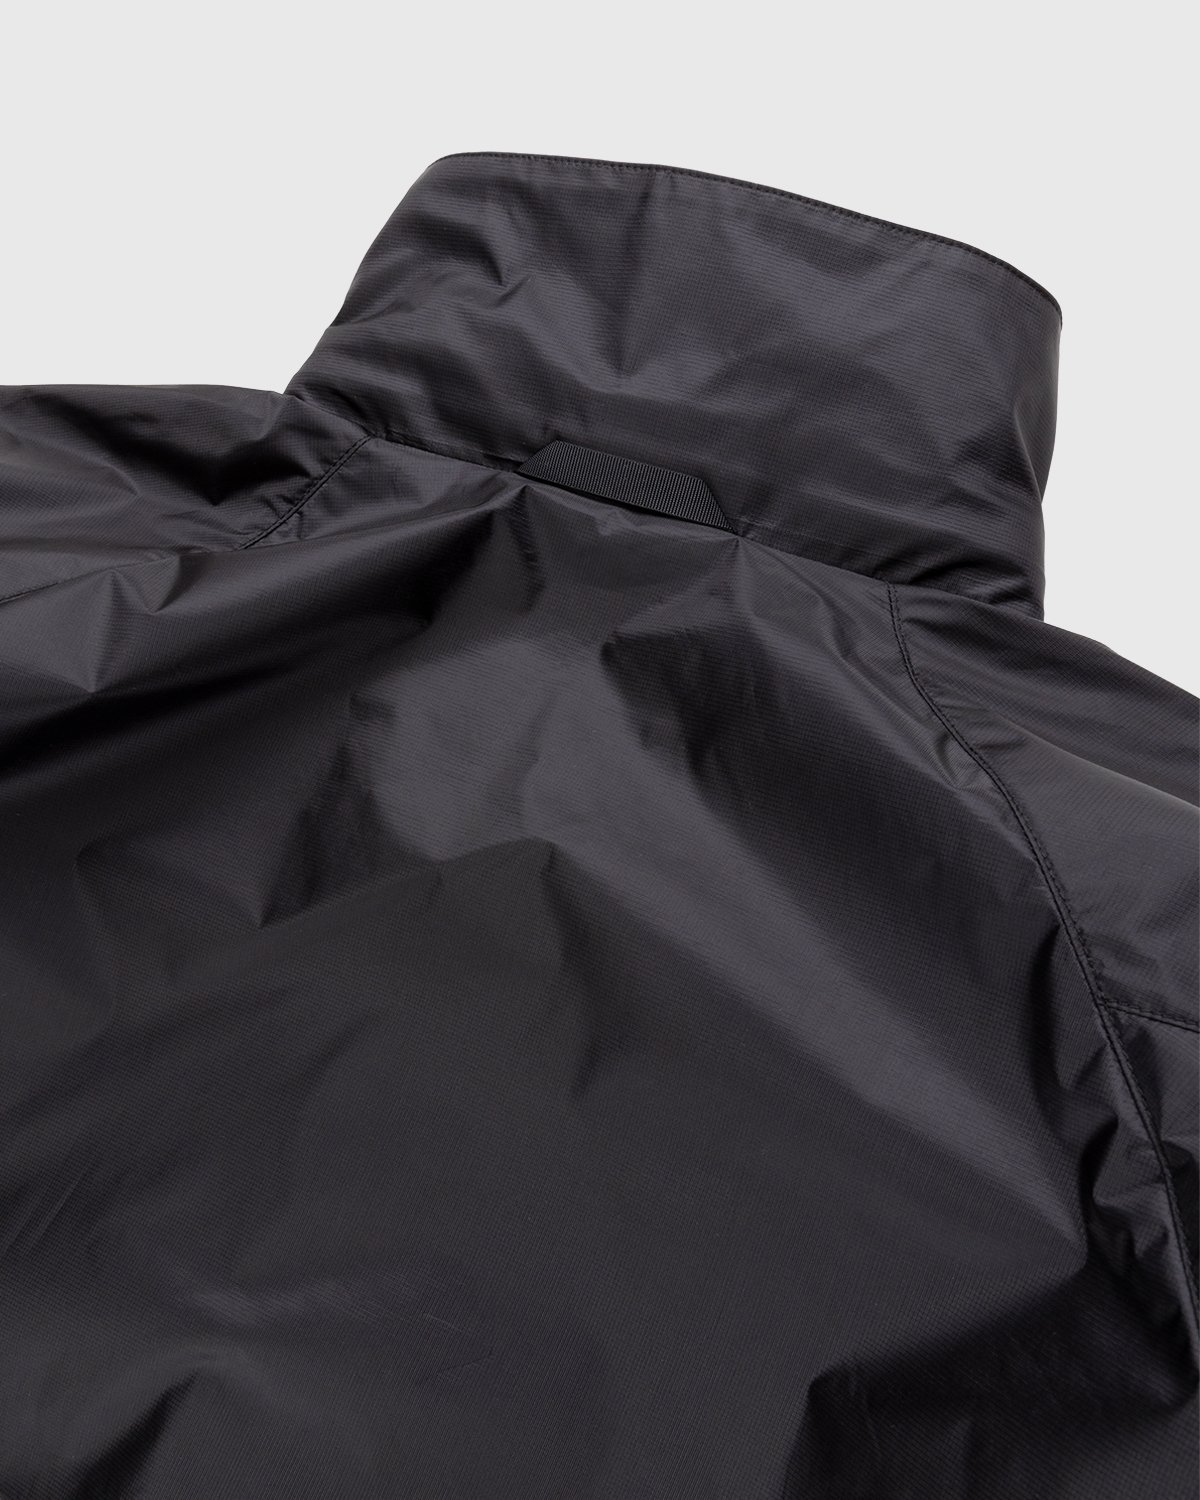 ACRONYM - J95-WS Jacket Black - Clothing - Black - Image 3